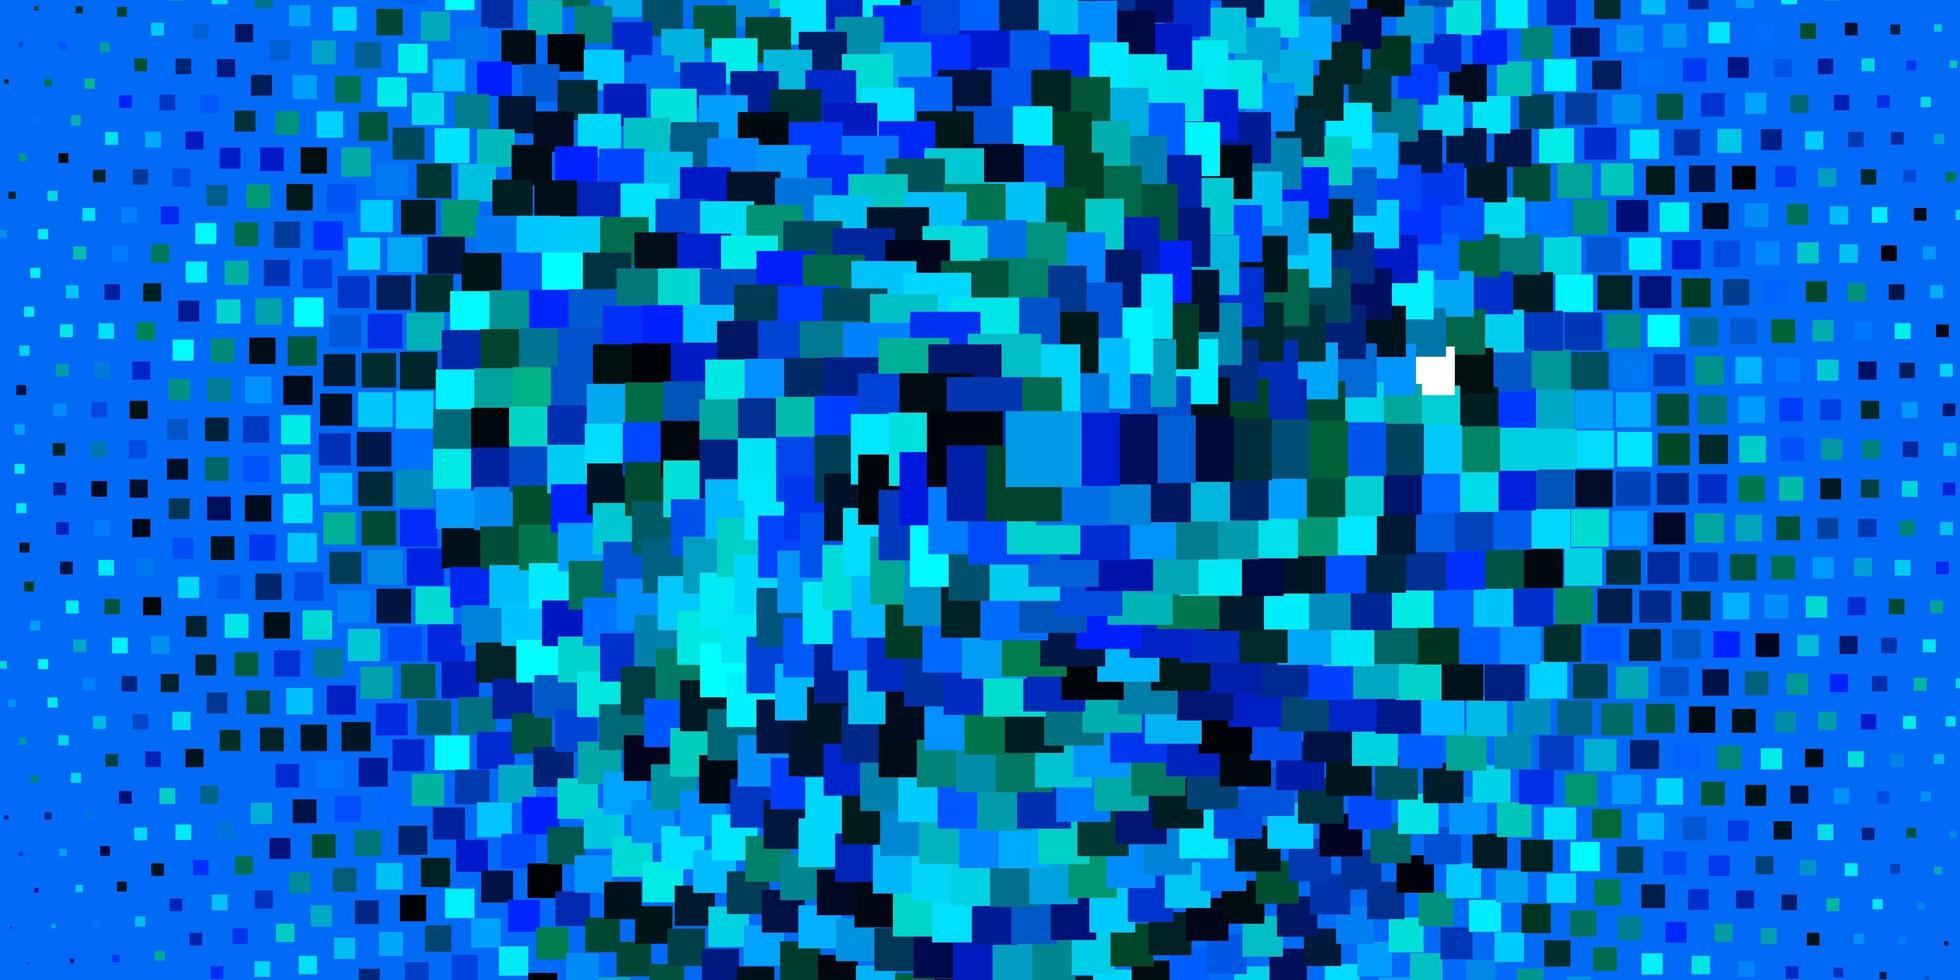 toile de fond de vecteur bleu clair avec des rectangles